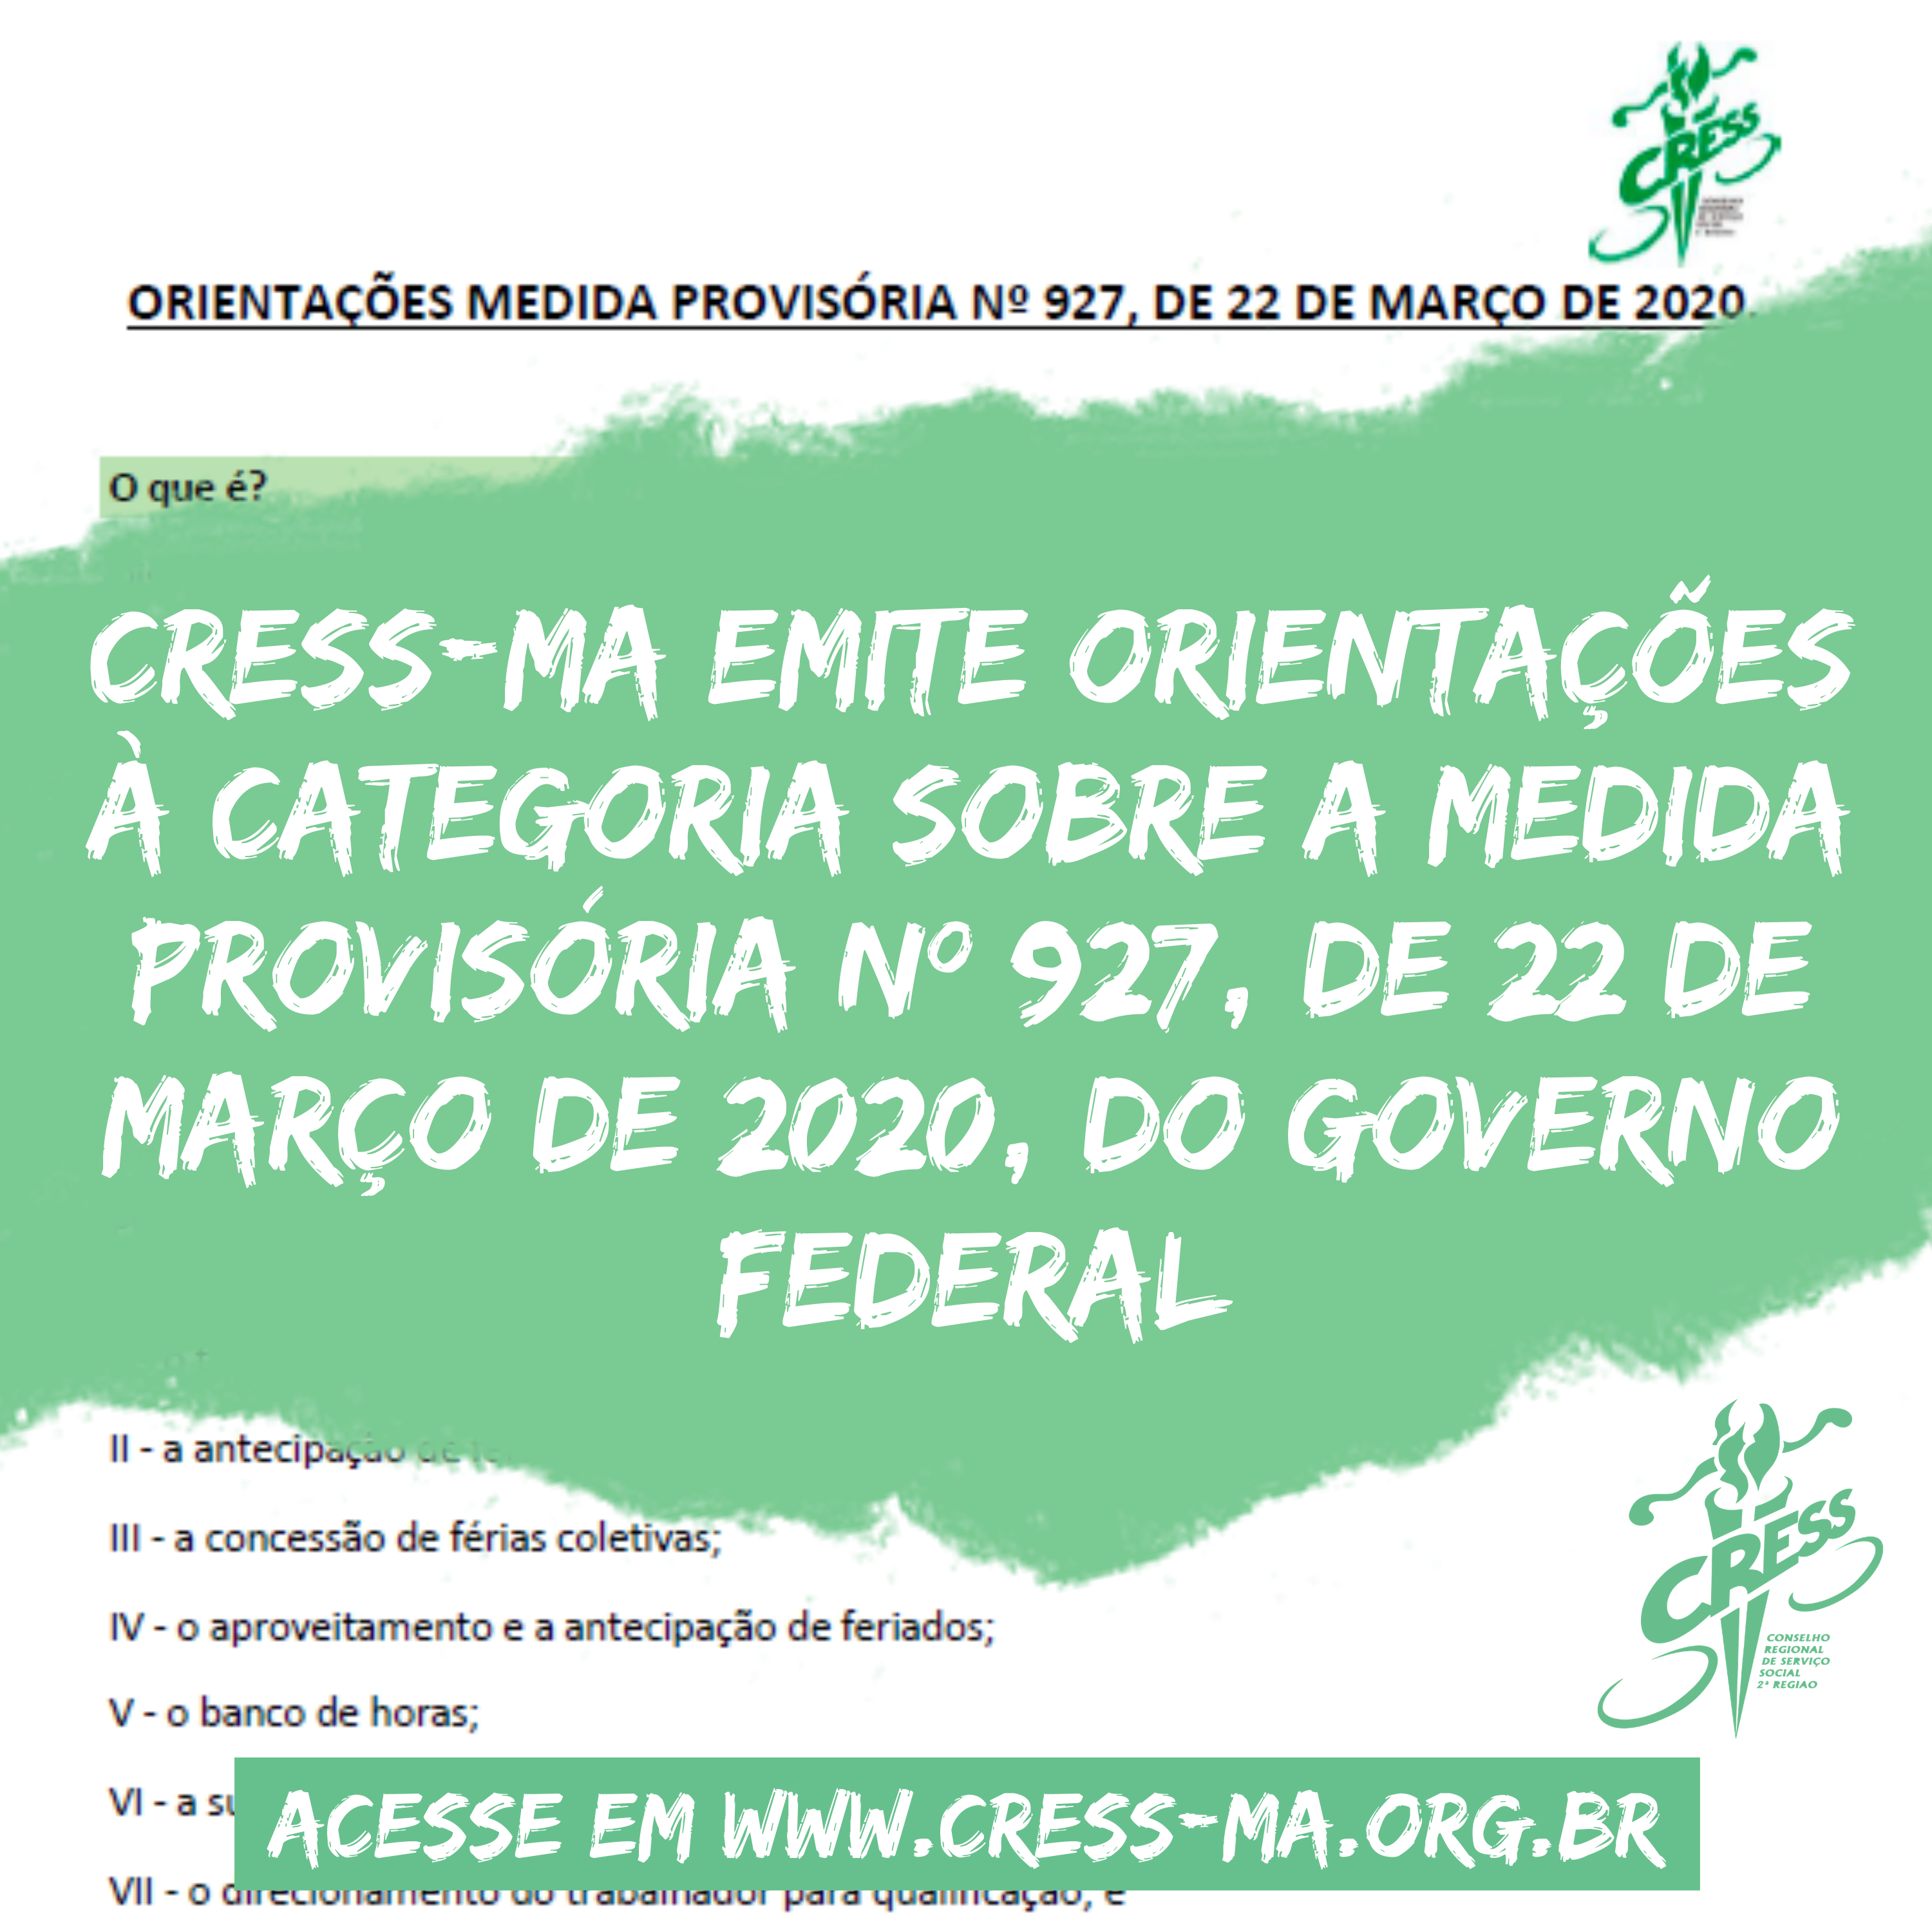 CRESS-MA emite orientações à categoria sobre a Medida Provisória nº 927, de 22 de março de 2020, do Governo Federal